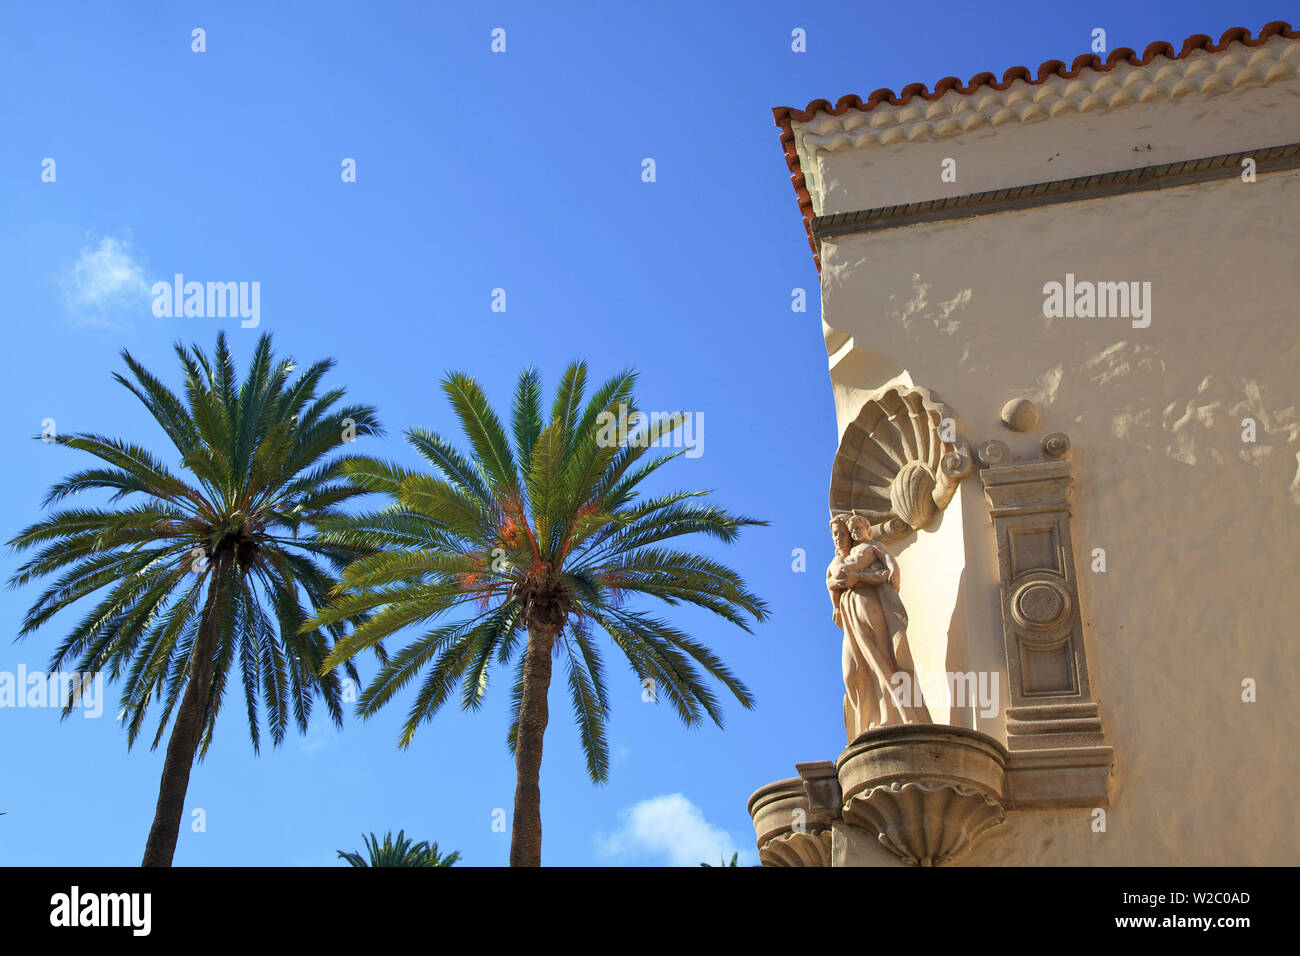 Dettagli architettonici in Pueblo Canario, Parque Doramas, Las Palmas de Gran Canaria Gran Canaria Isole Canarie Spagna, Oceano Atlantico, Europa Foto Stock